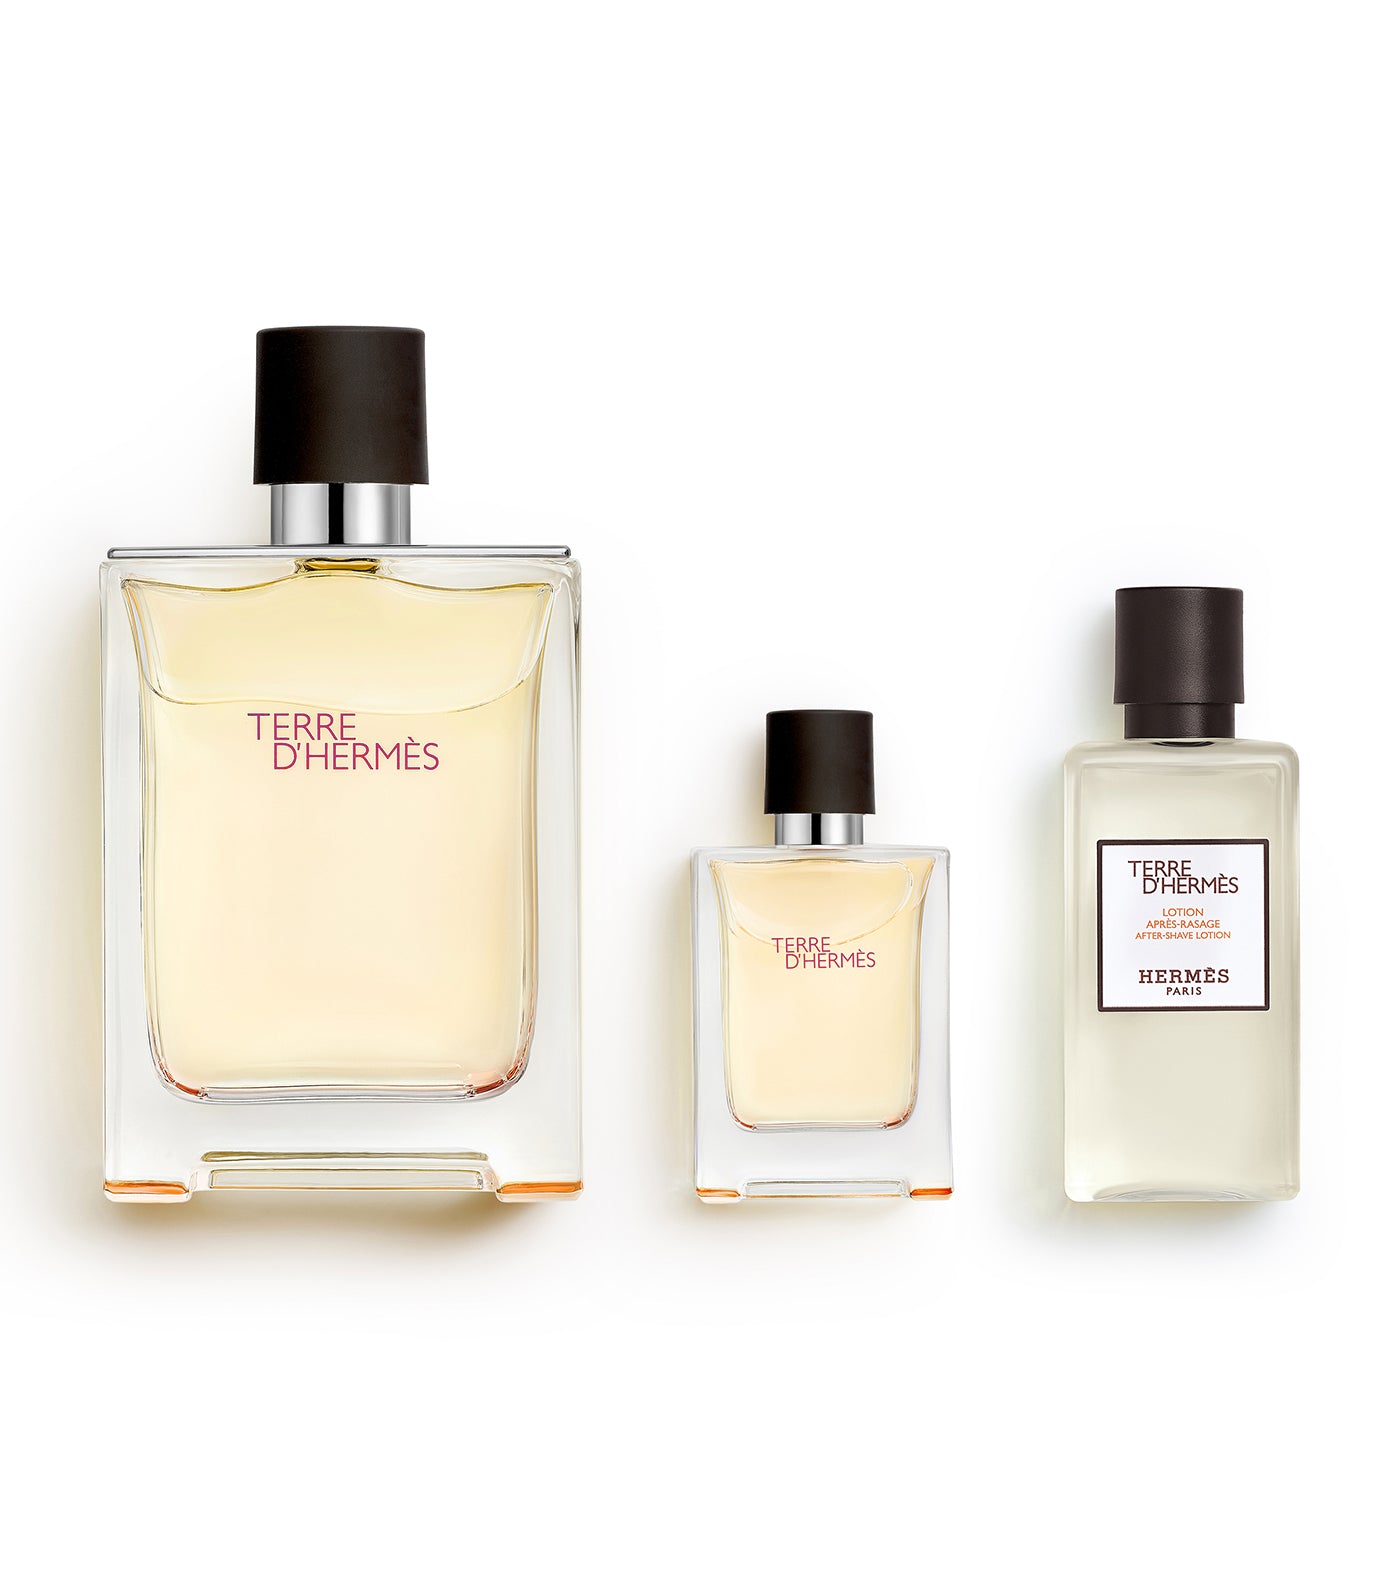 Terre d'Hermès gift set, Eau de Toilette 100ml + Eau de Toilette 12.5ml + after-shave lotion 40ml